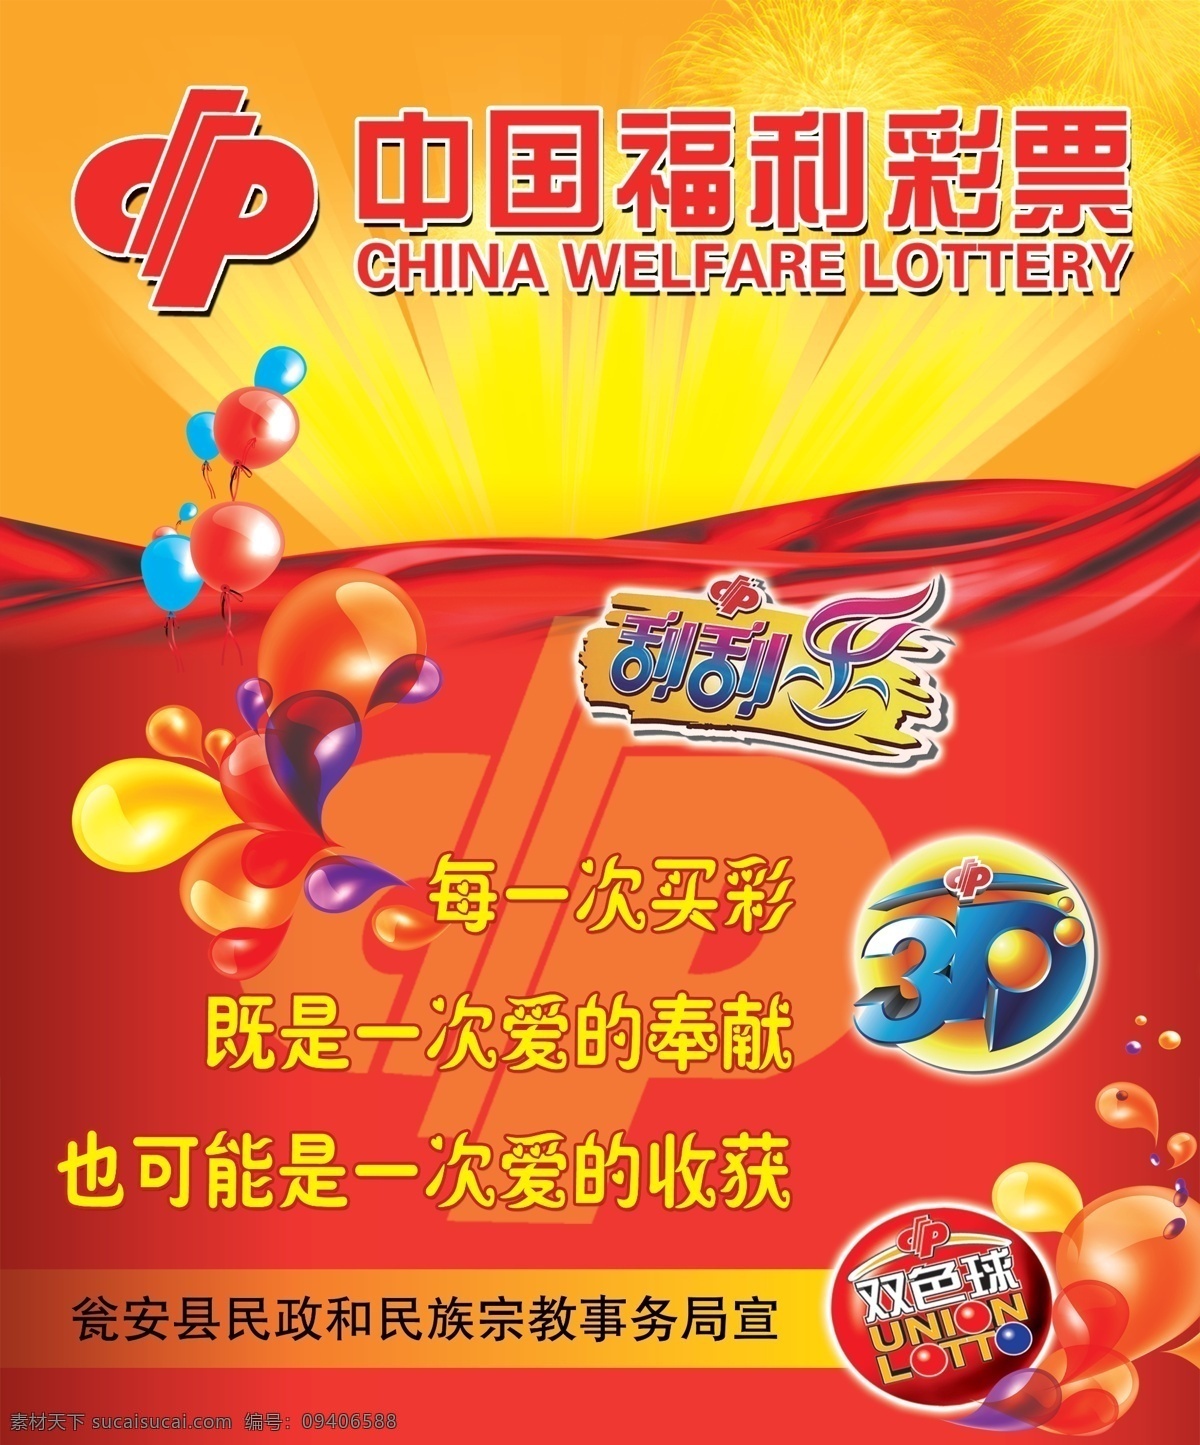 中国福利彩票 福彩 双色球 刮刮乐 3d 海报 红色背景 广告设计模版 分层 源文件